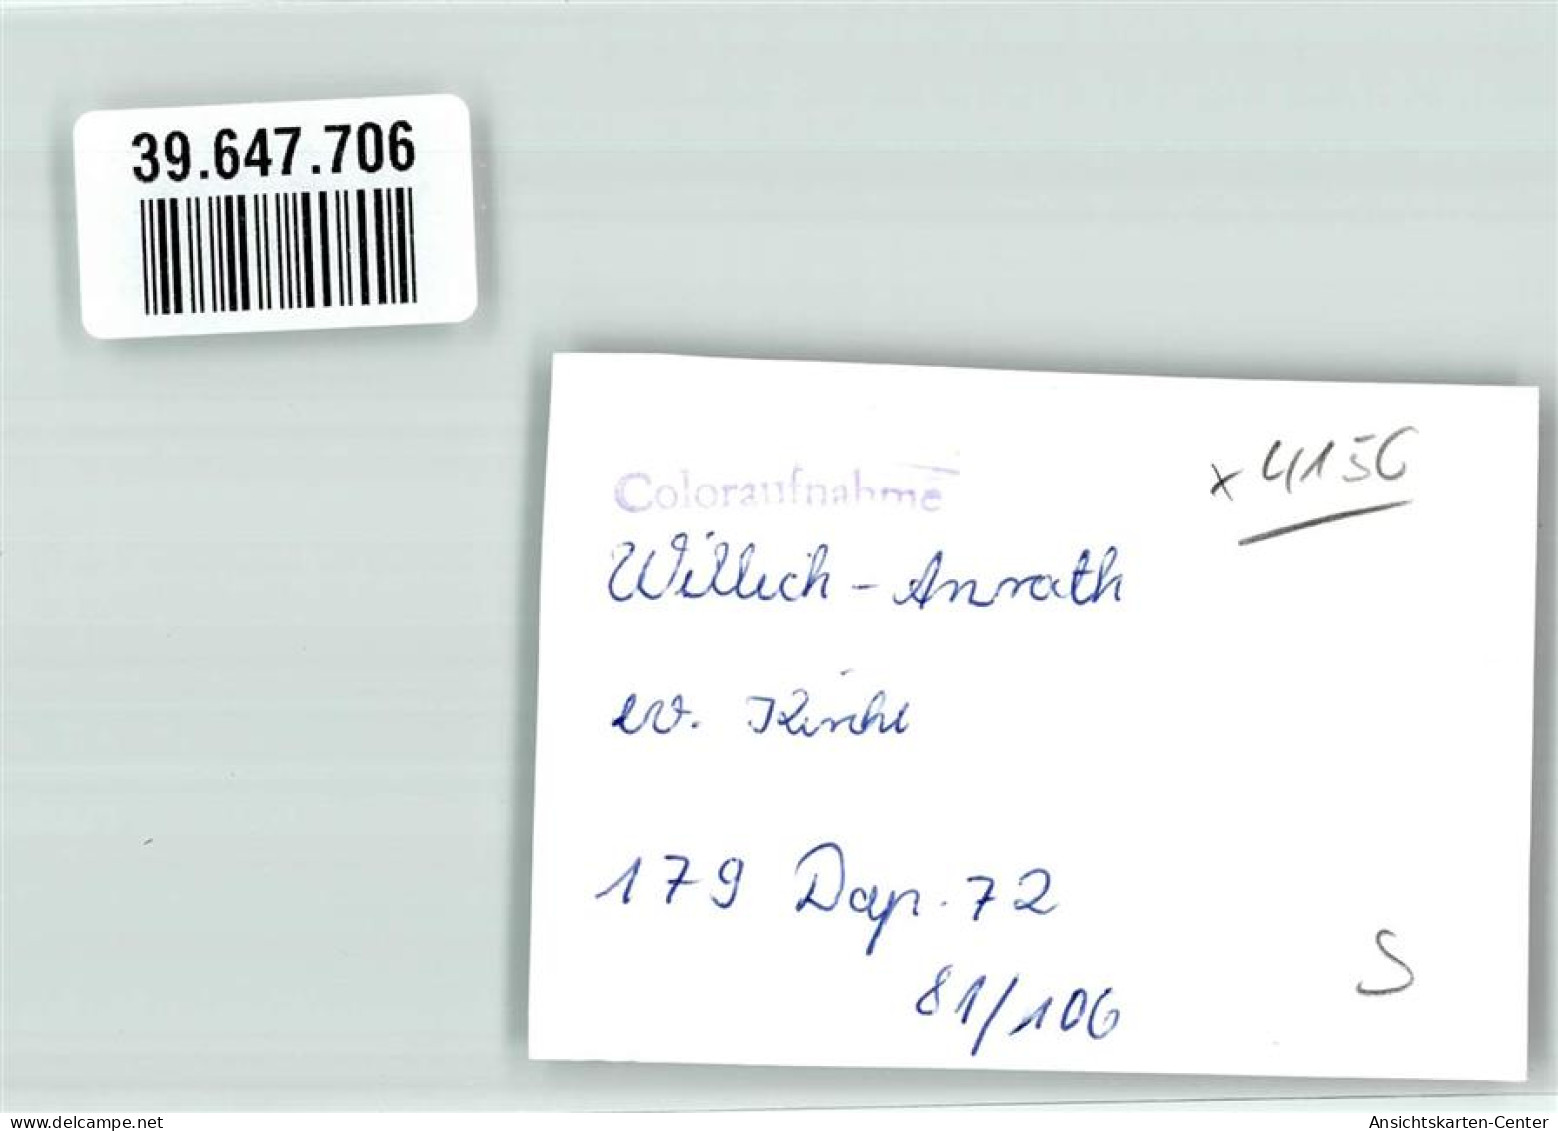 39647706 - Anrath - Willich